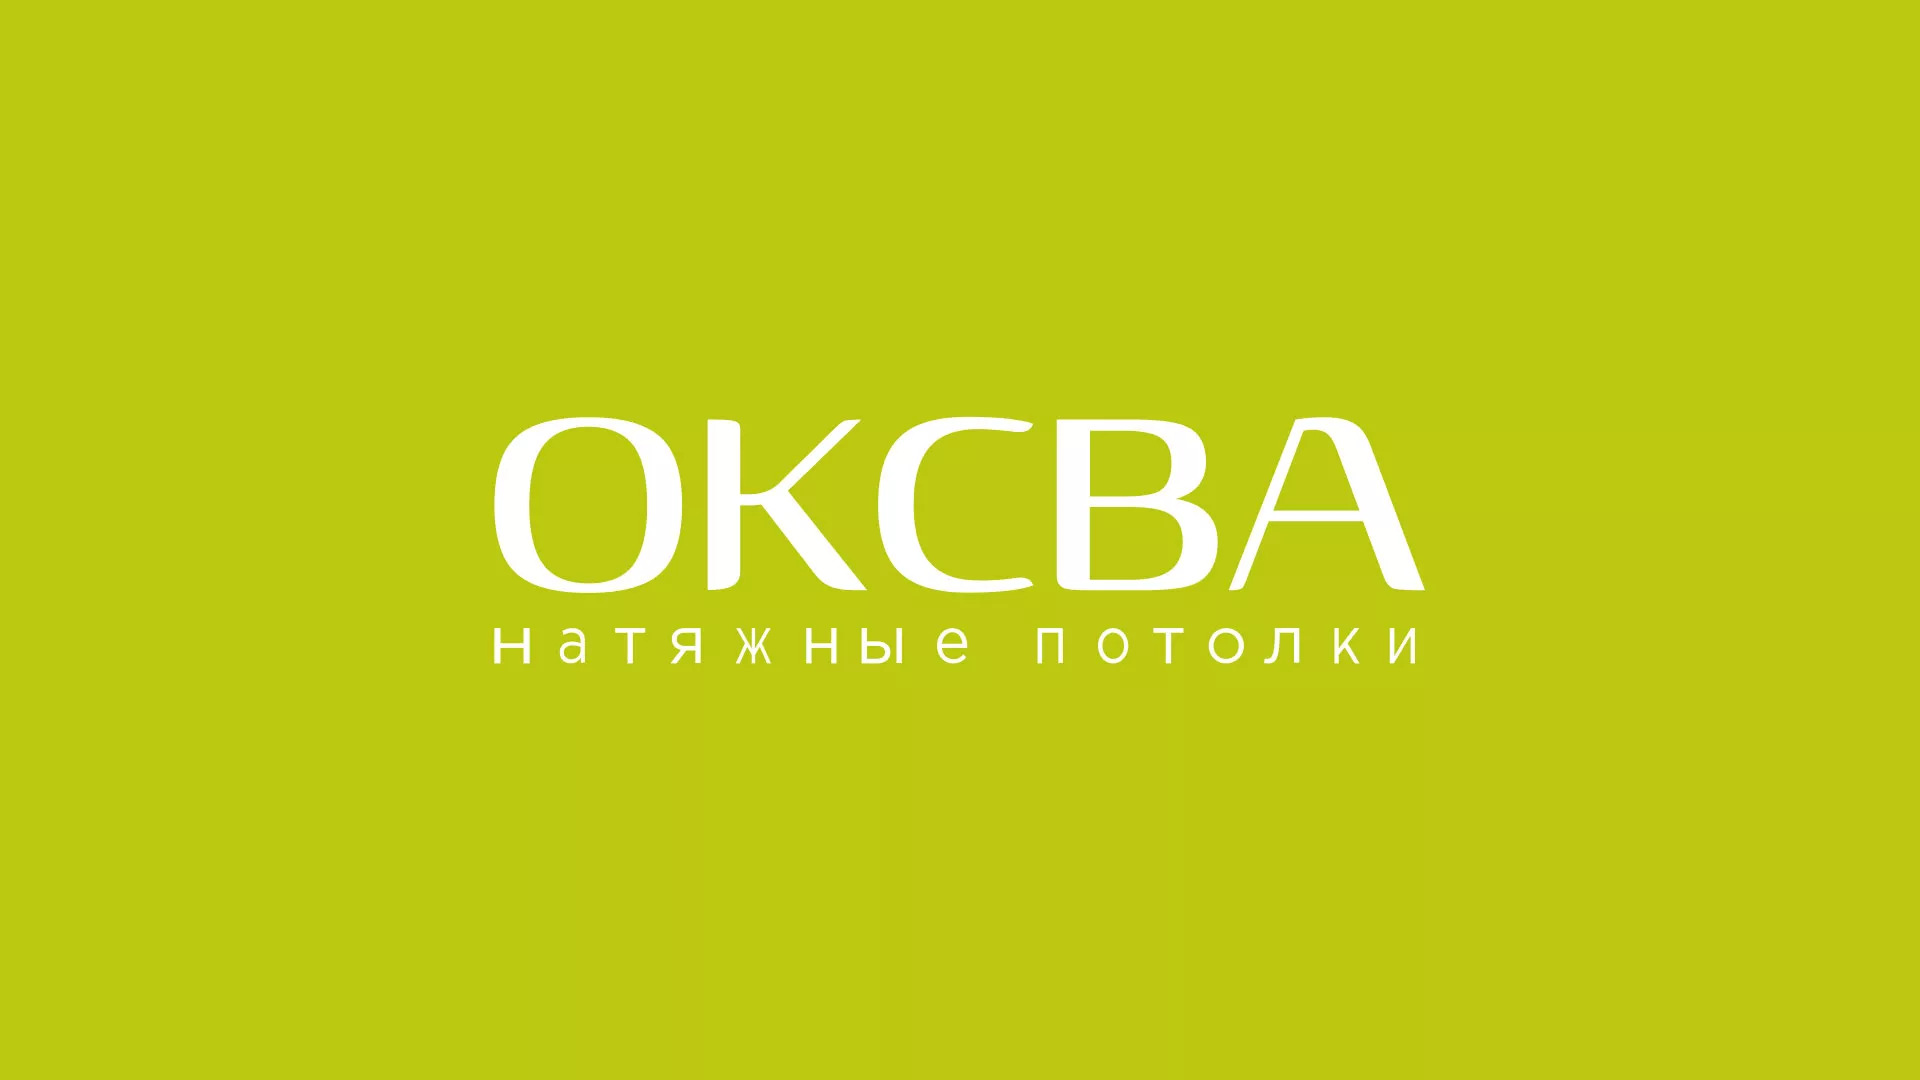 Создание сайта по продаже натяжных потолков для компании «ОКСВА» в Шенкурске